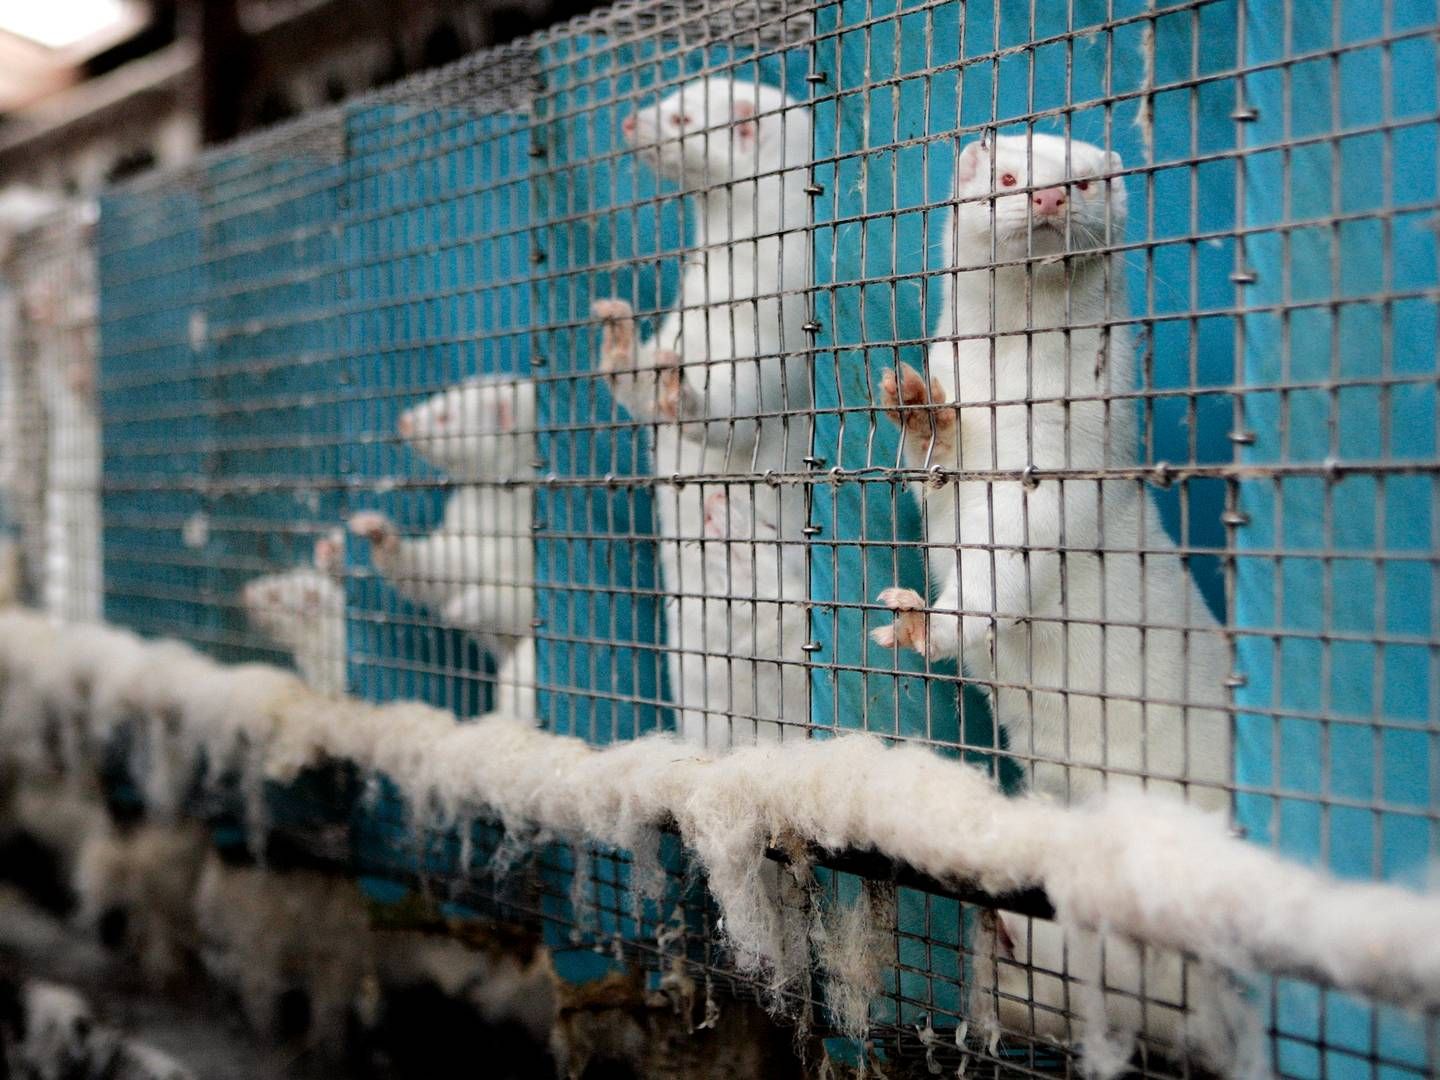 Det er bl.a. produktionen af mink og chinchillaer, som de 1,5 mio. borgere har skrevet under på skal afskaffes. | Foto: Finn Frandsen